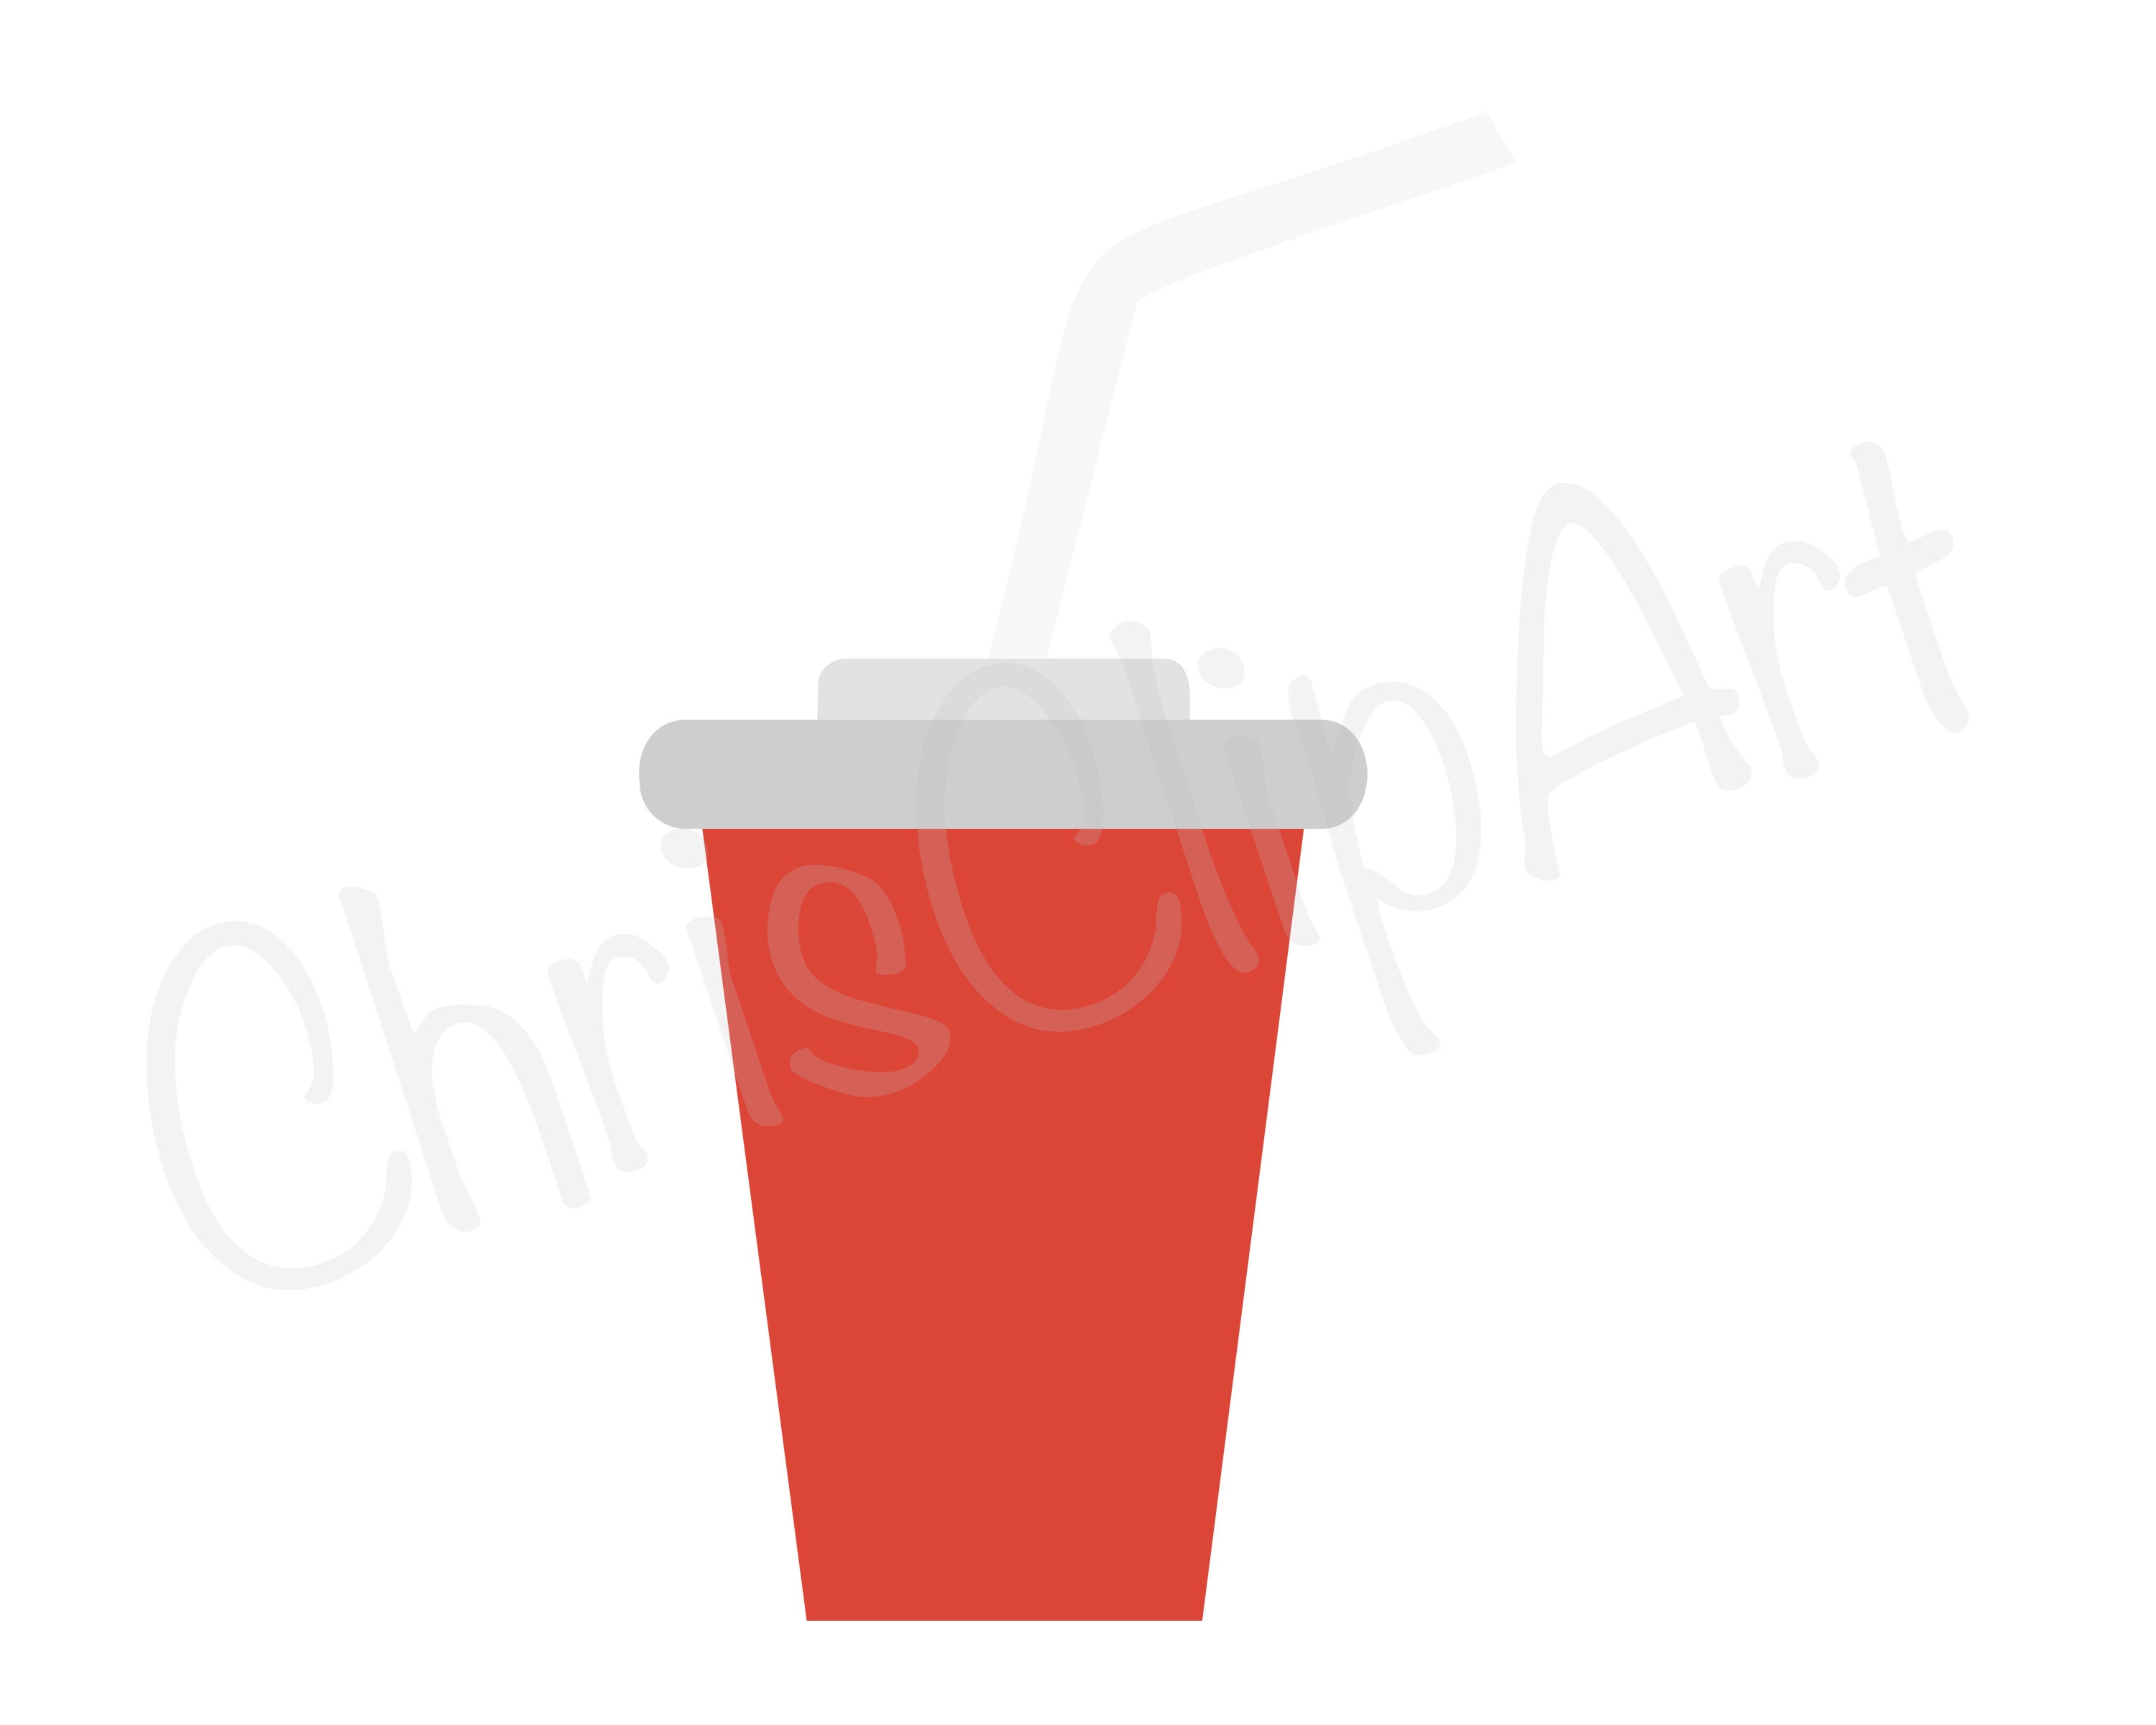 Soda Cup Clip Art Stock Illustrations – 490 Soda Cup Clip Art